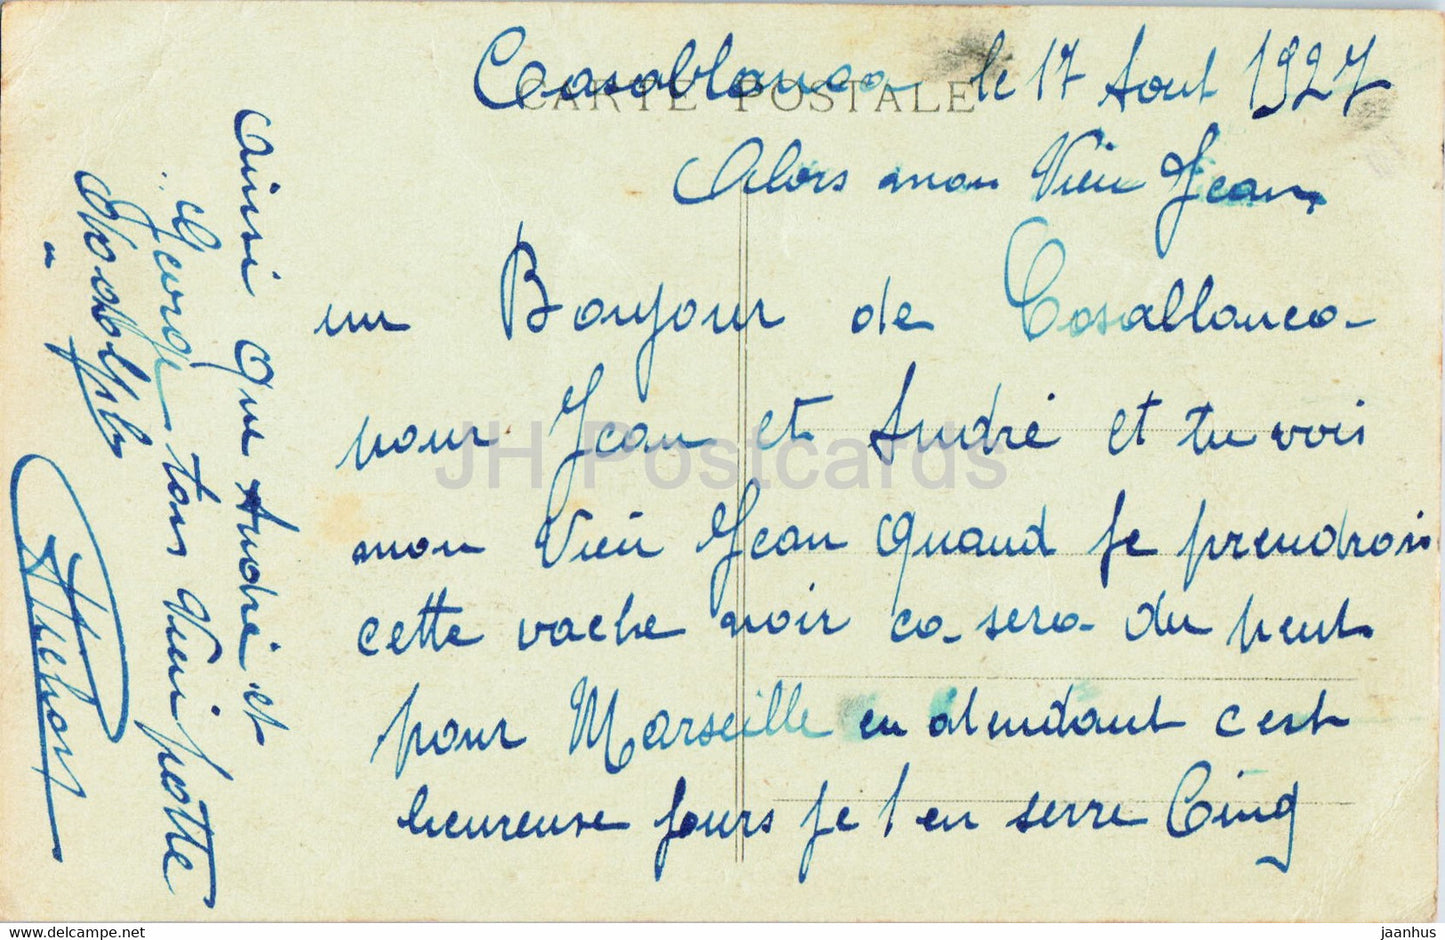 L'Anfa - Courrier de Marseille - navire - paquebot - 163 - carte postale ancienne - 1927 - France - occasion